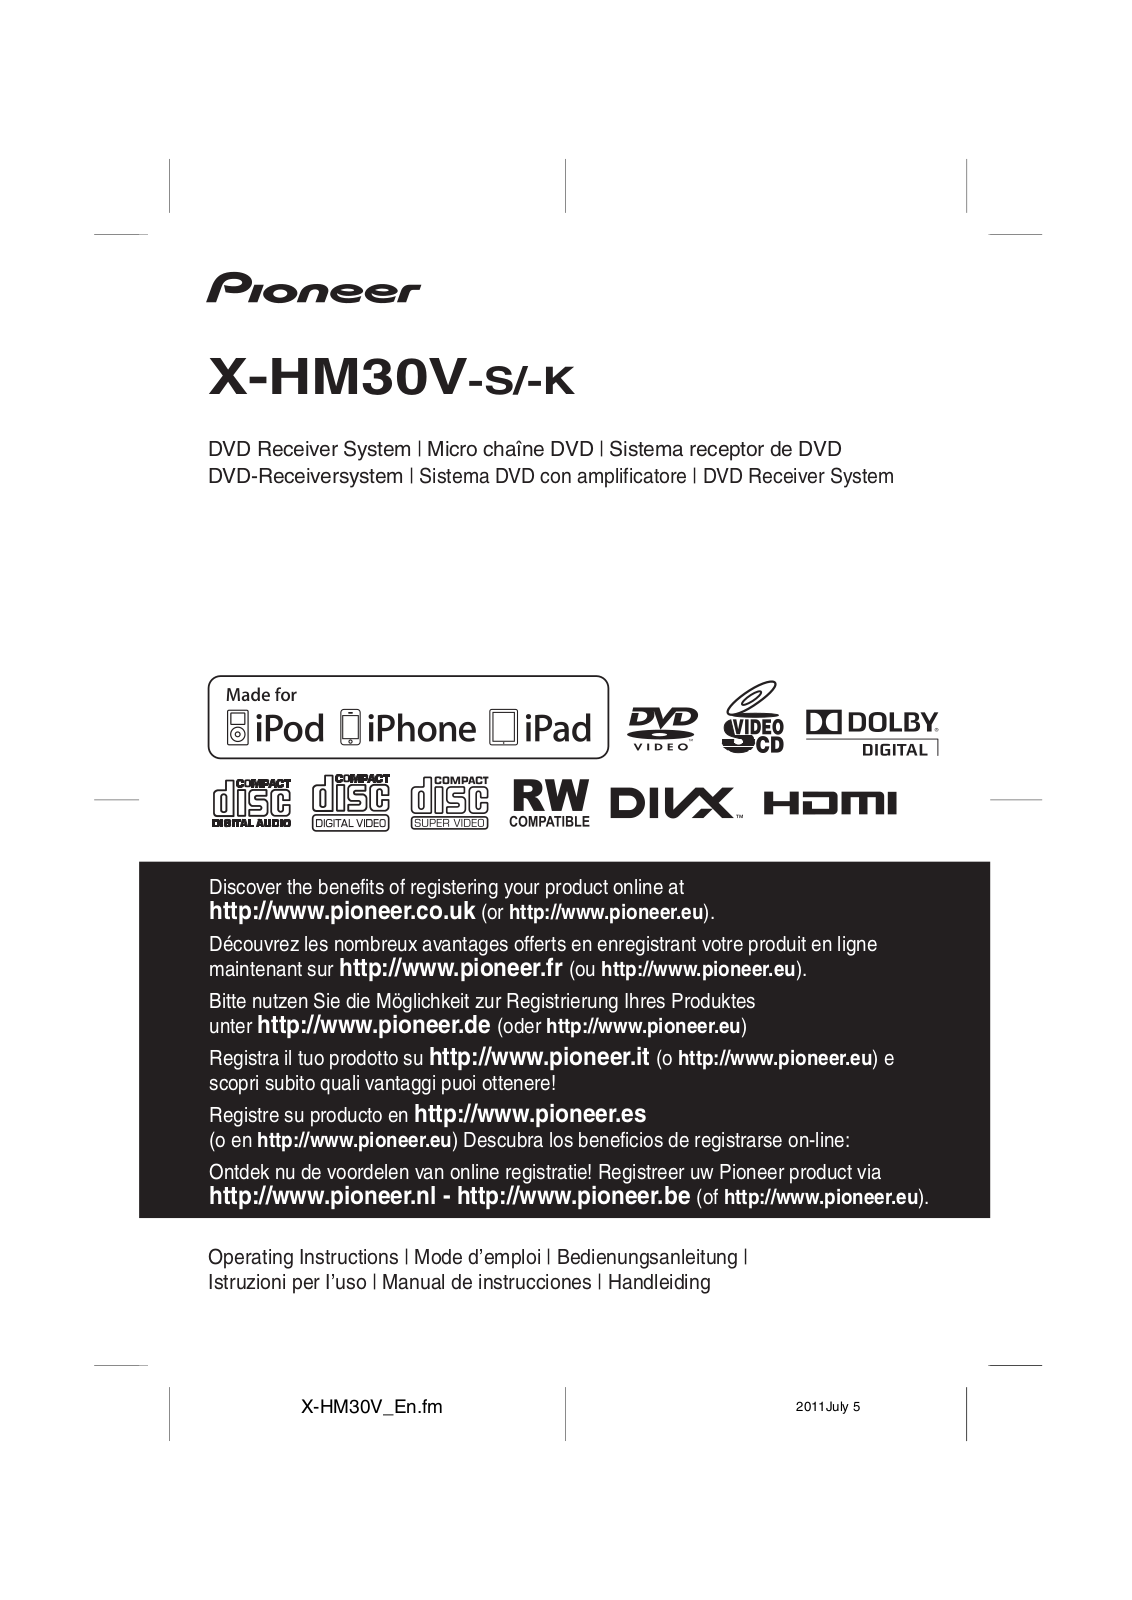 Pioneer X-HM30V-S User Manual